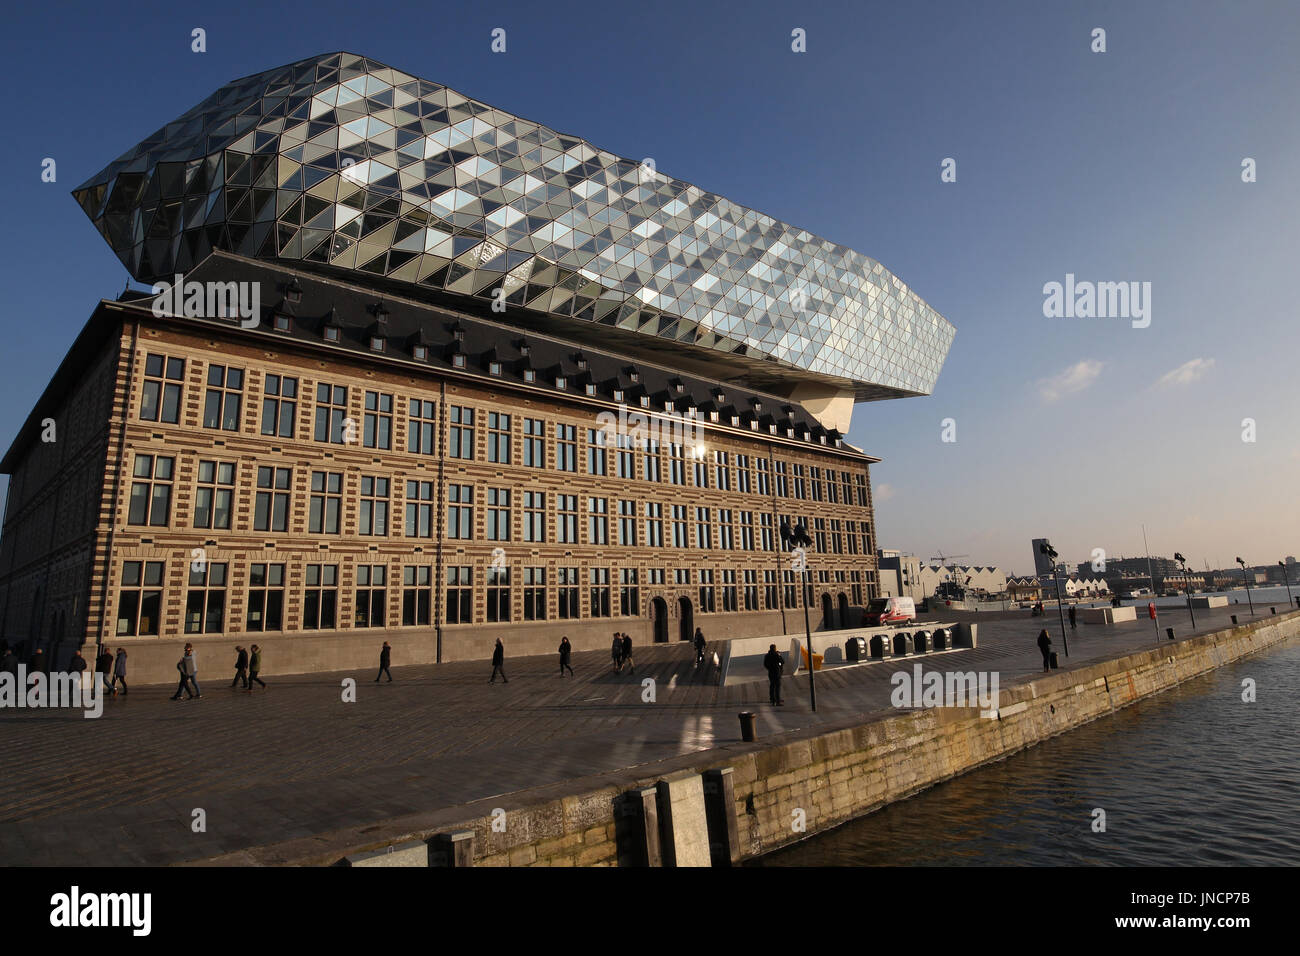 La porta House è la sede dell'Autorità portuale di Anversa. Esso si trova in Anversa, Fiandre, in Belgio. Foto Stock